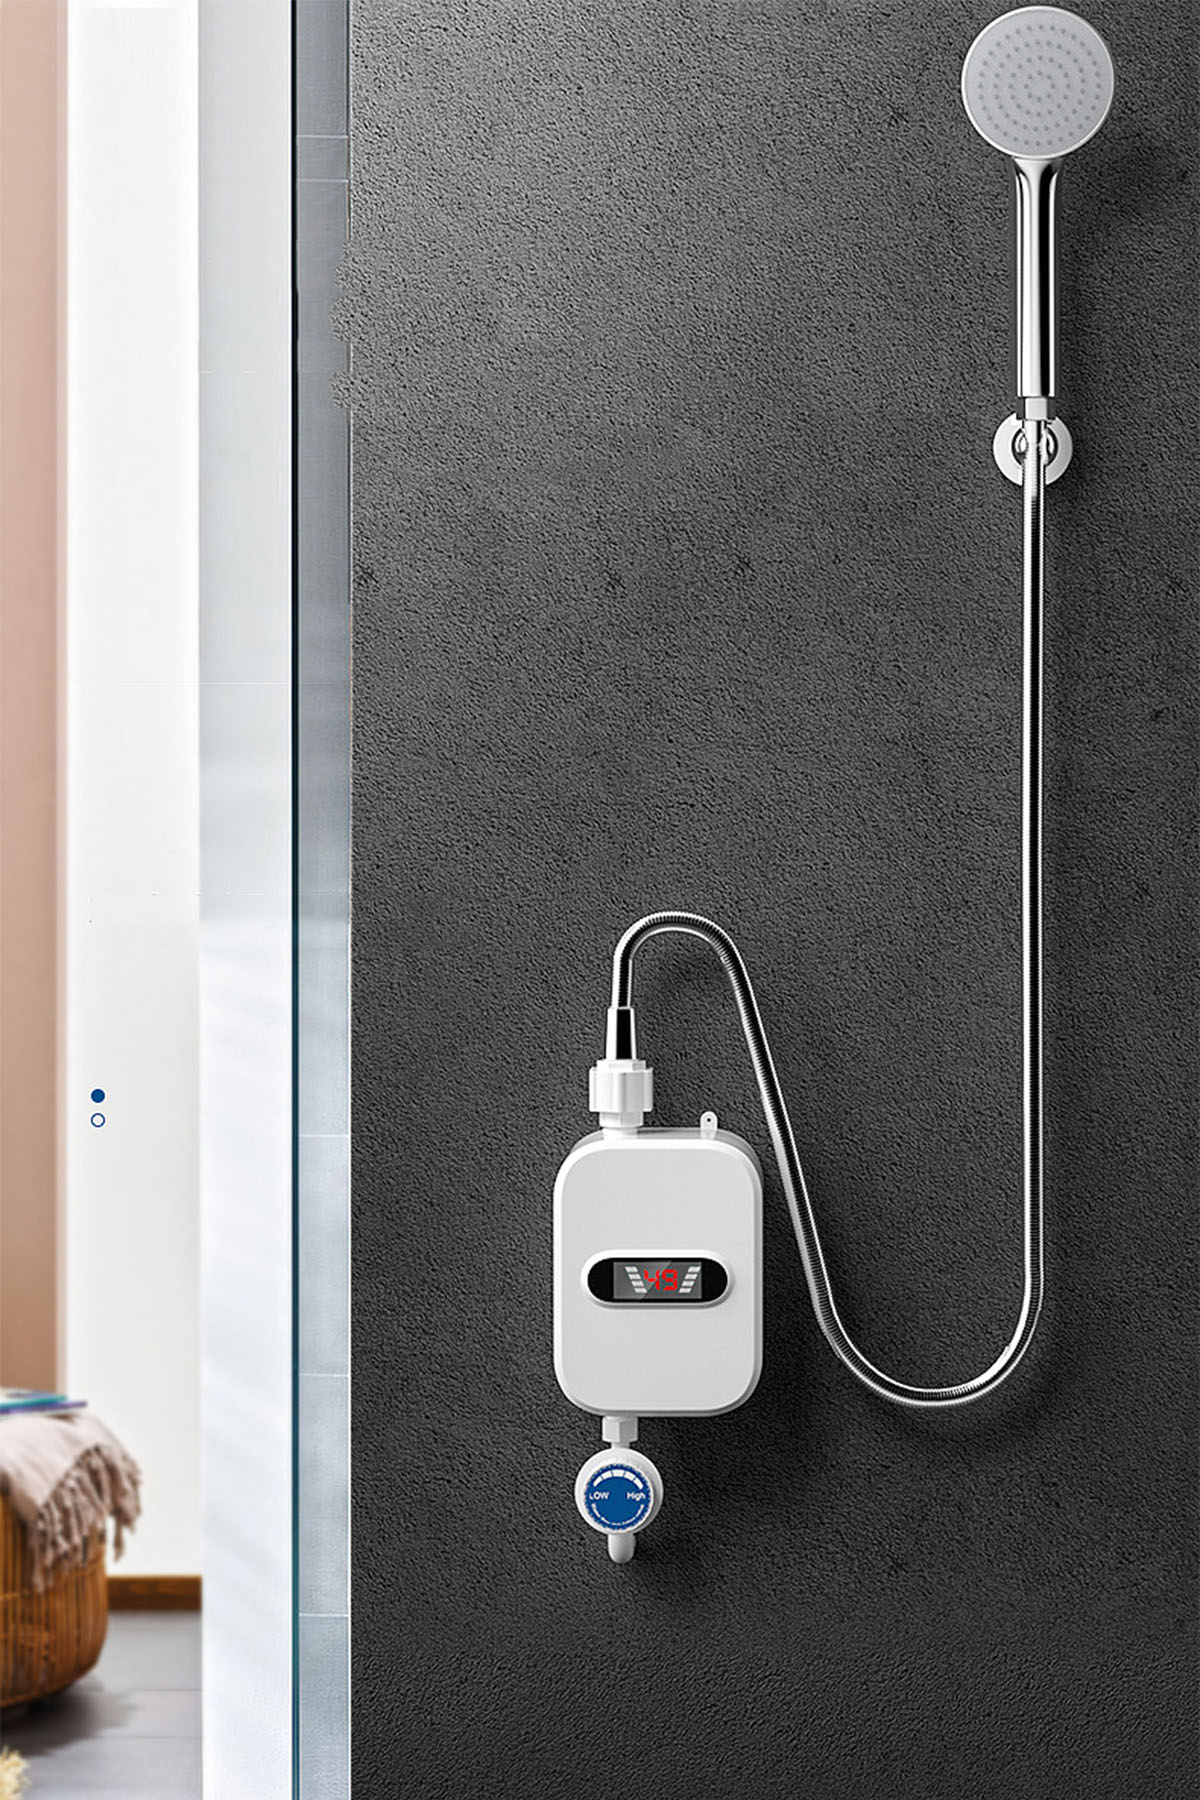 BRIGHTAKE Sofortiges Warmwasser Brausegarnitur Thermostat-Durchlauferhitzer-Duschkopf-Set - Kompakte Warmwasserbereiter